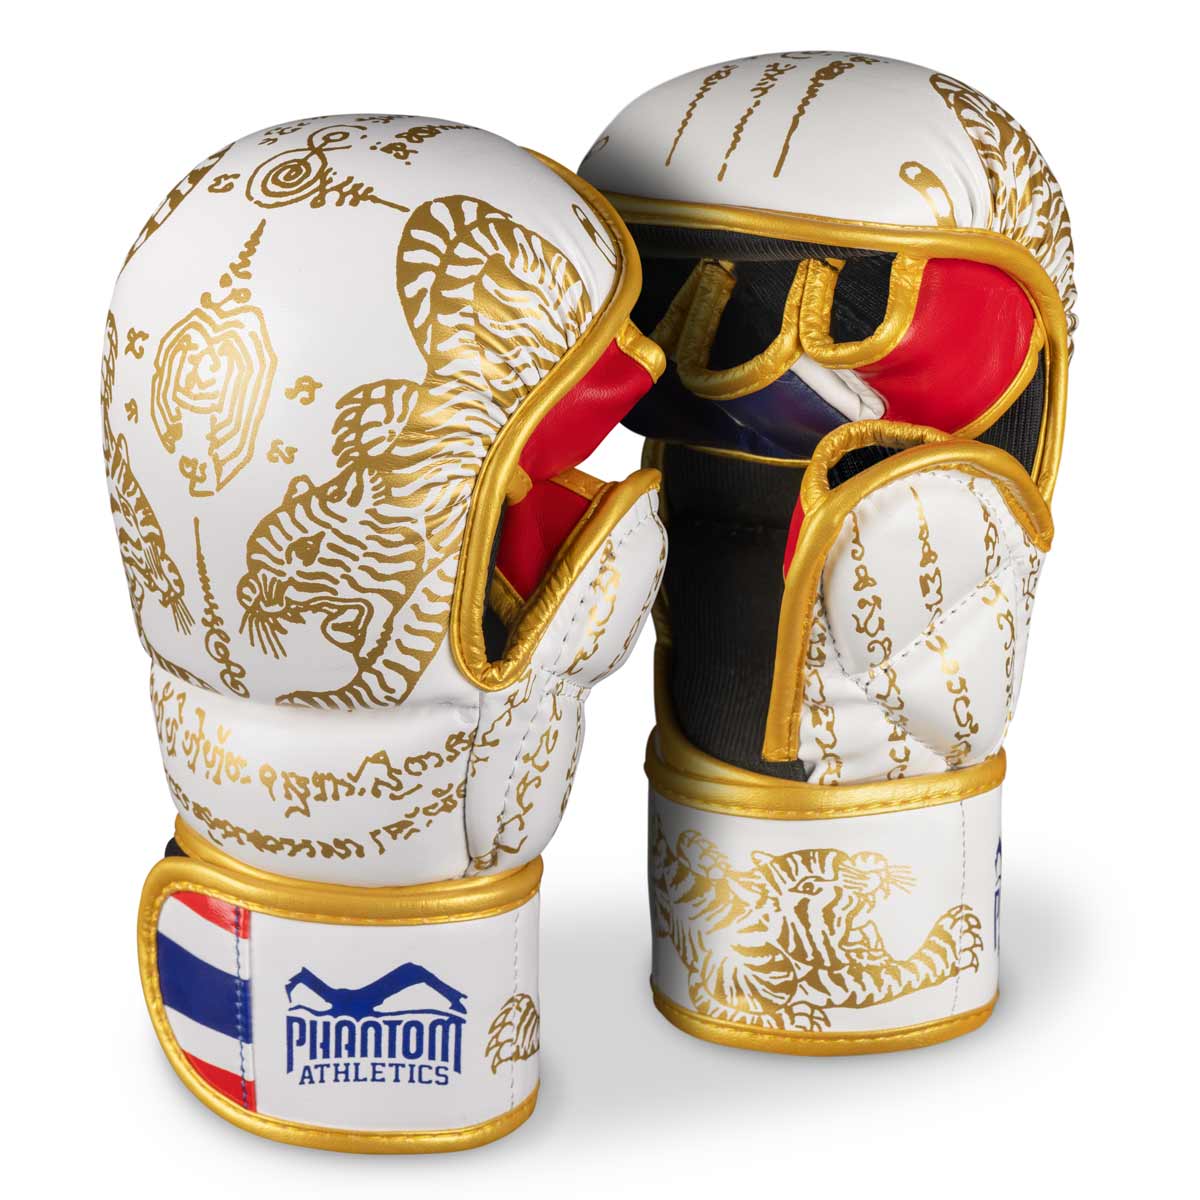 Phantom Muay Thai Handschuhe für Thaiboxen und MMA Sparring, Wettkampf und Training. Im traditionellen Sak Yant Design und der Farbe Weiß/Gold.